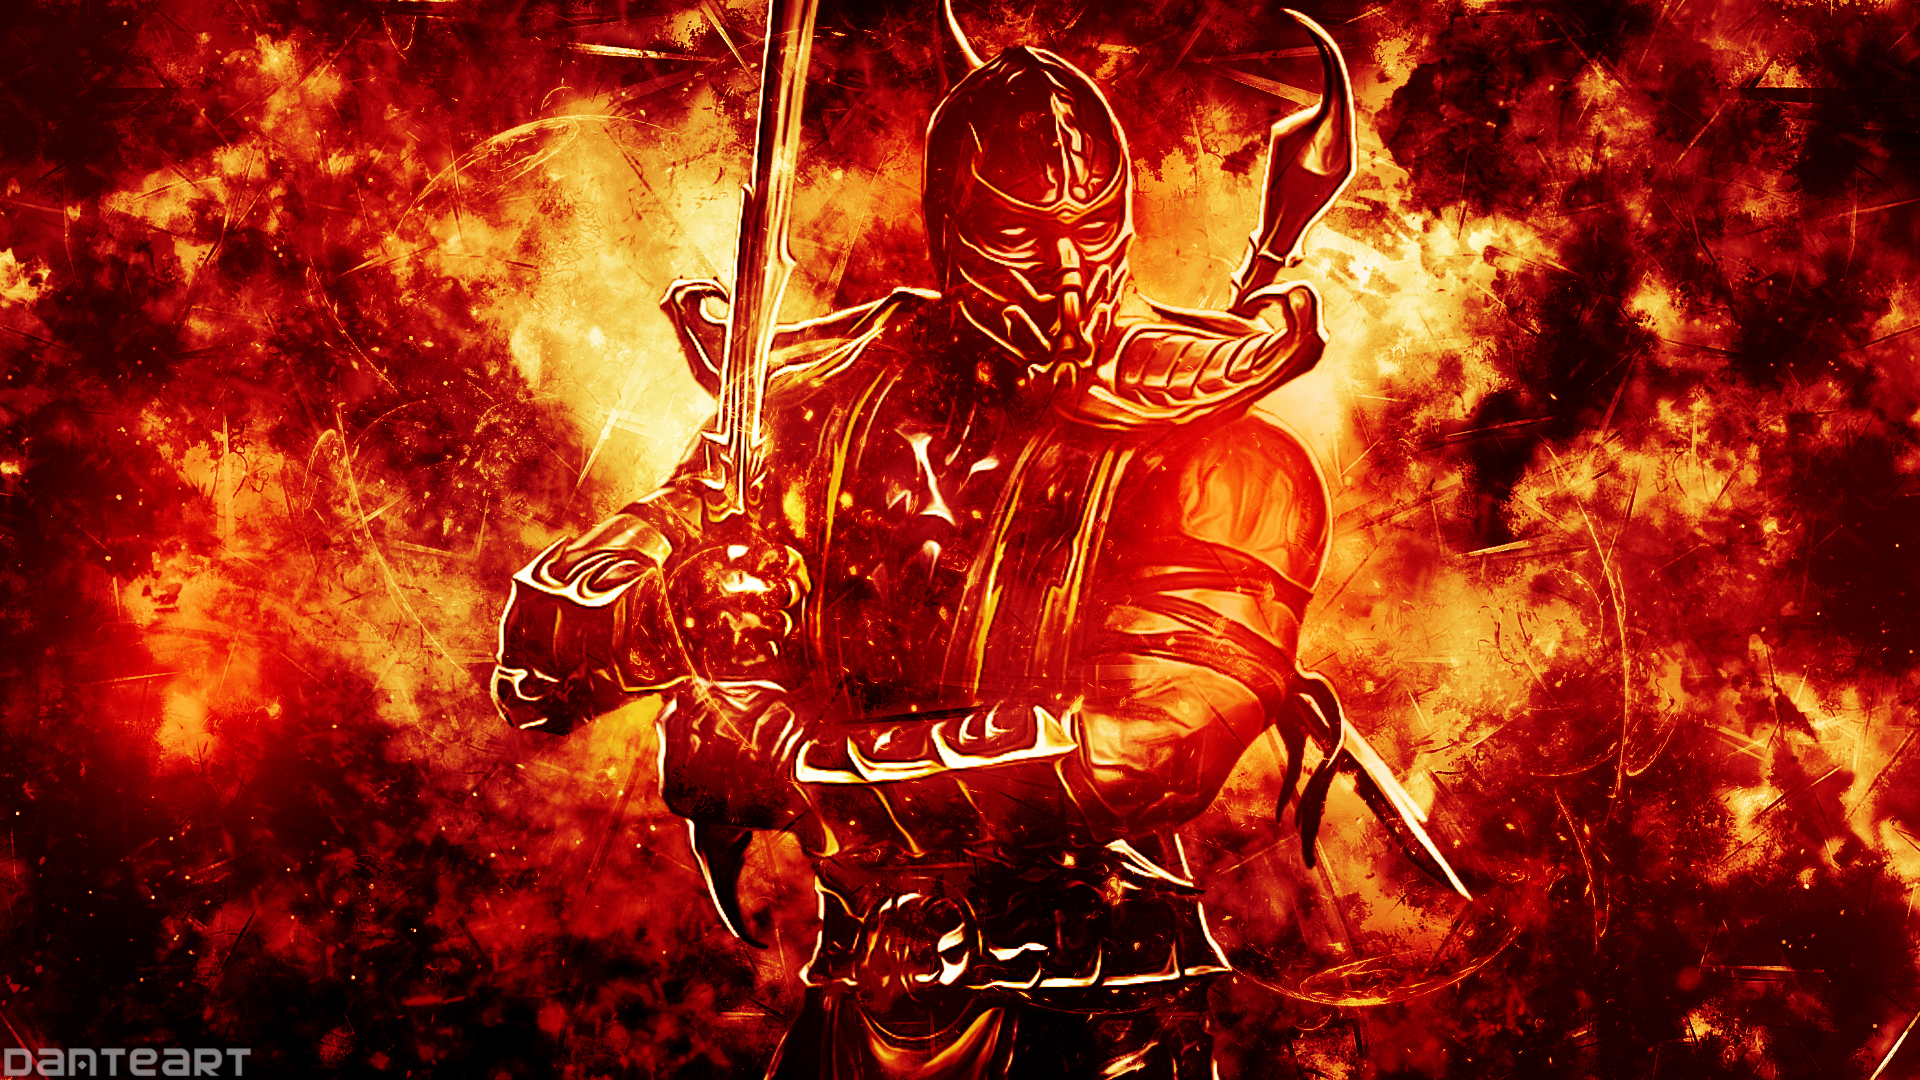 Mortal Kombat Scorpion Wallpaper By Danteartwallpaper On